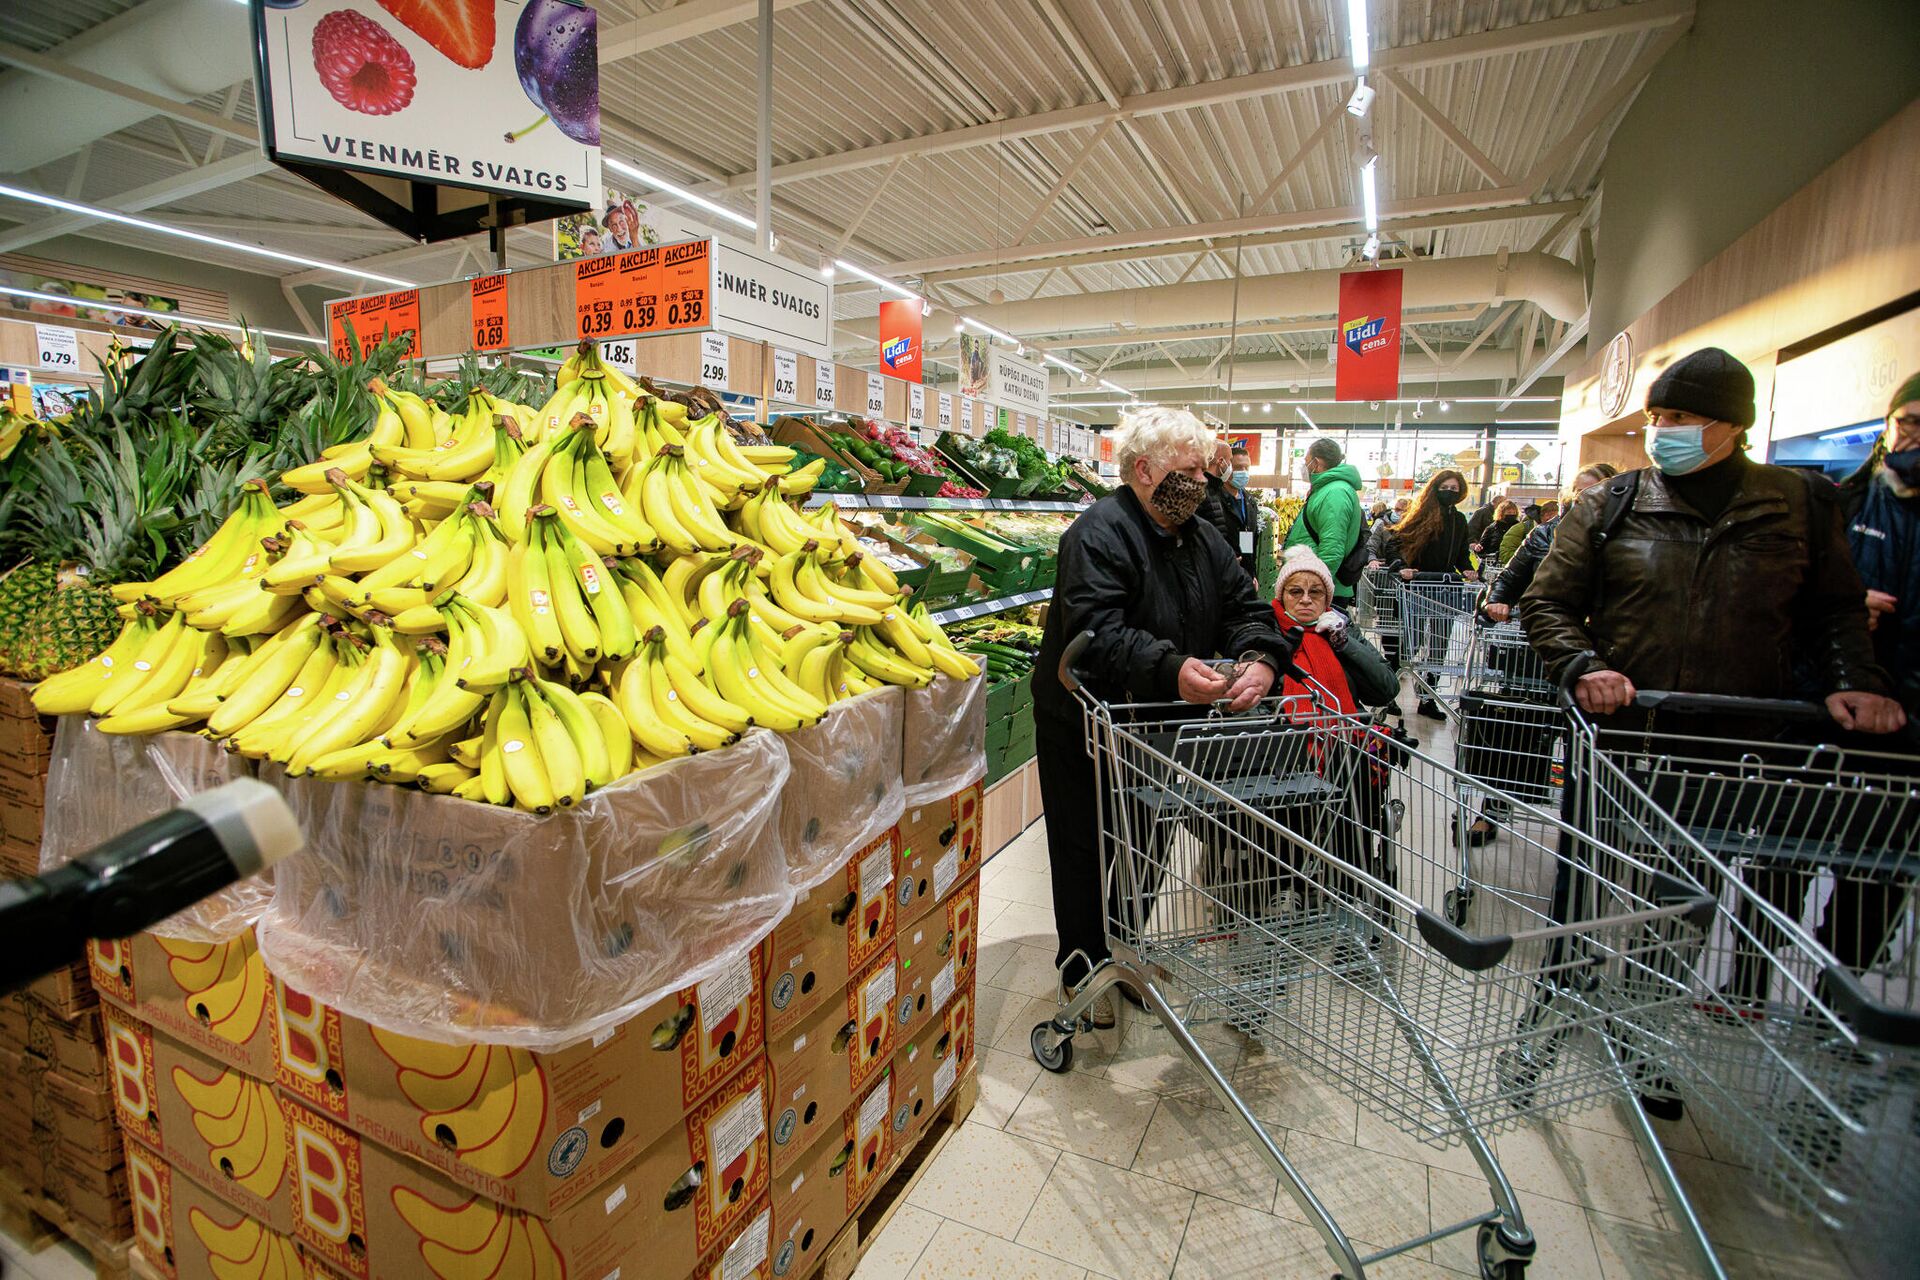 Покупатели проходят у стенда со знаменитыми бананами, ставшими символом прихода сети Lidl в Латвию - Sputnik Латвия, 1920, 07.10.2021